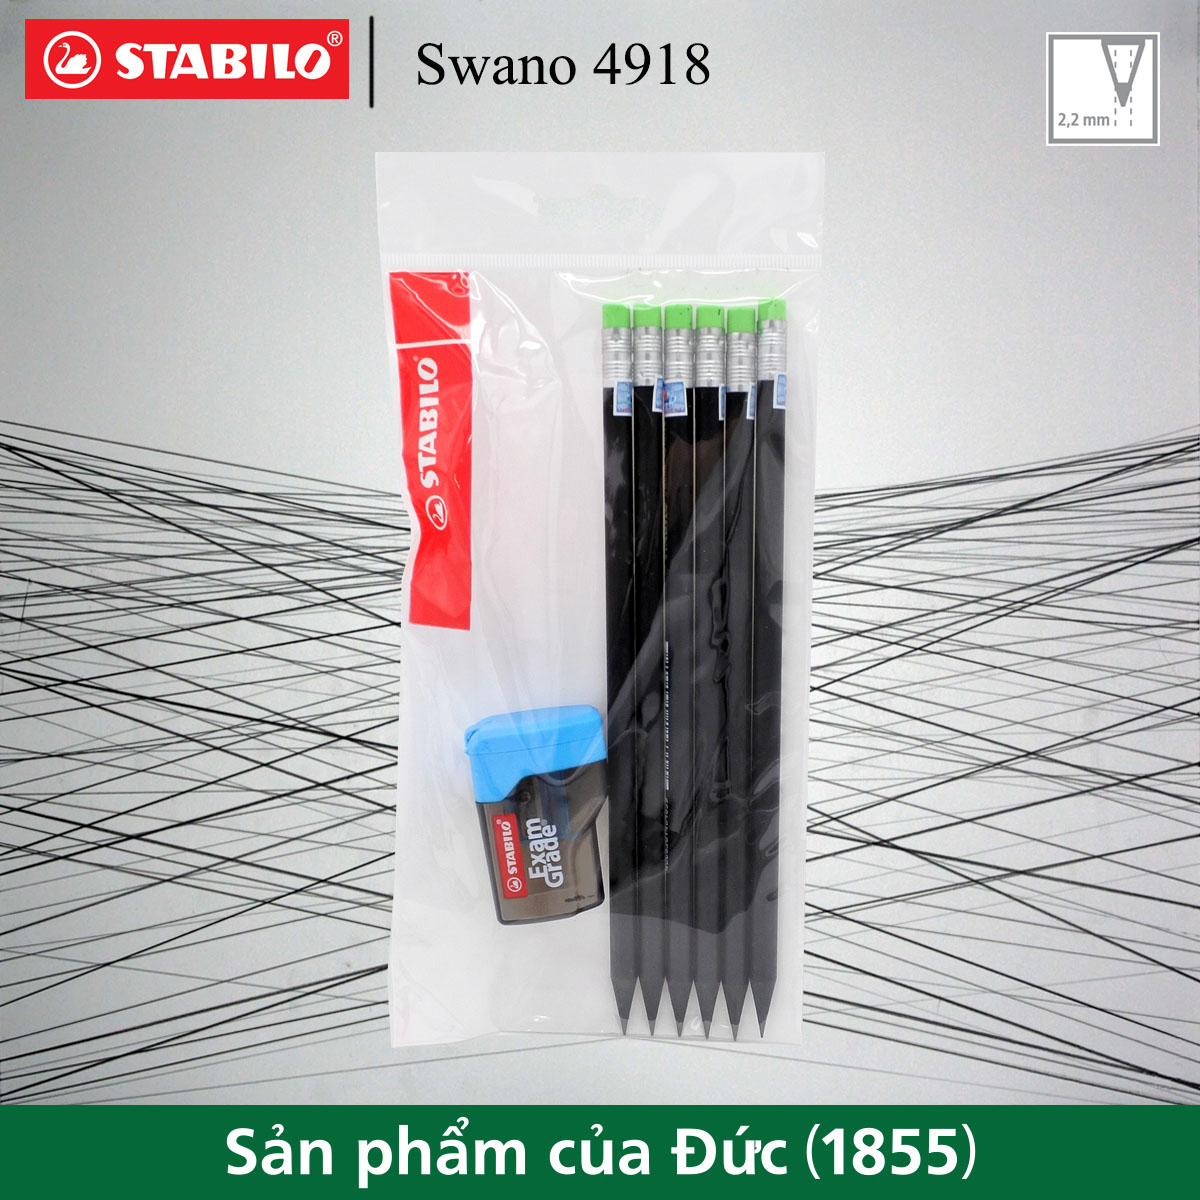 Bộ 6 bút chì gỗ STABILO Swano 2B 4918 (thân đen, đầu tẩy màu)